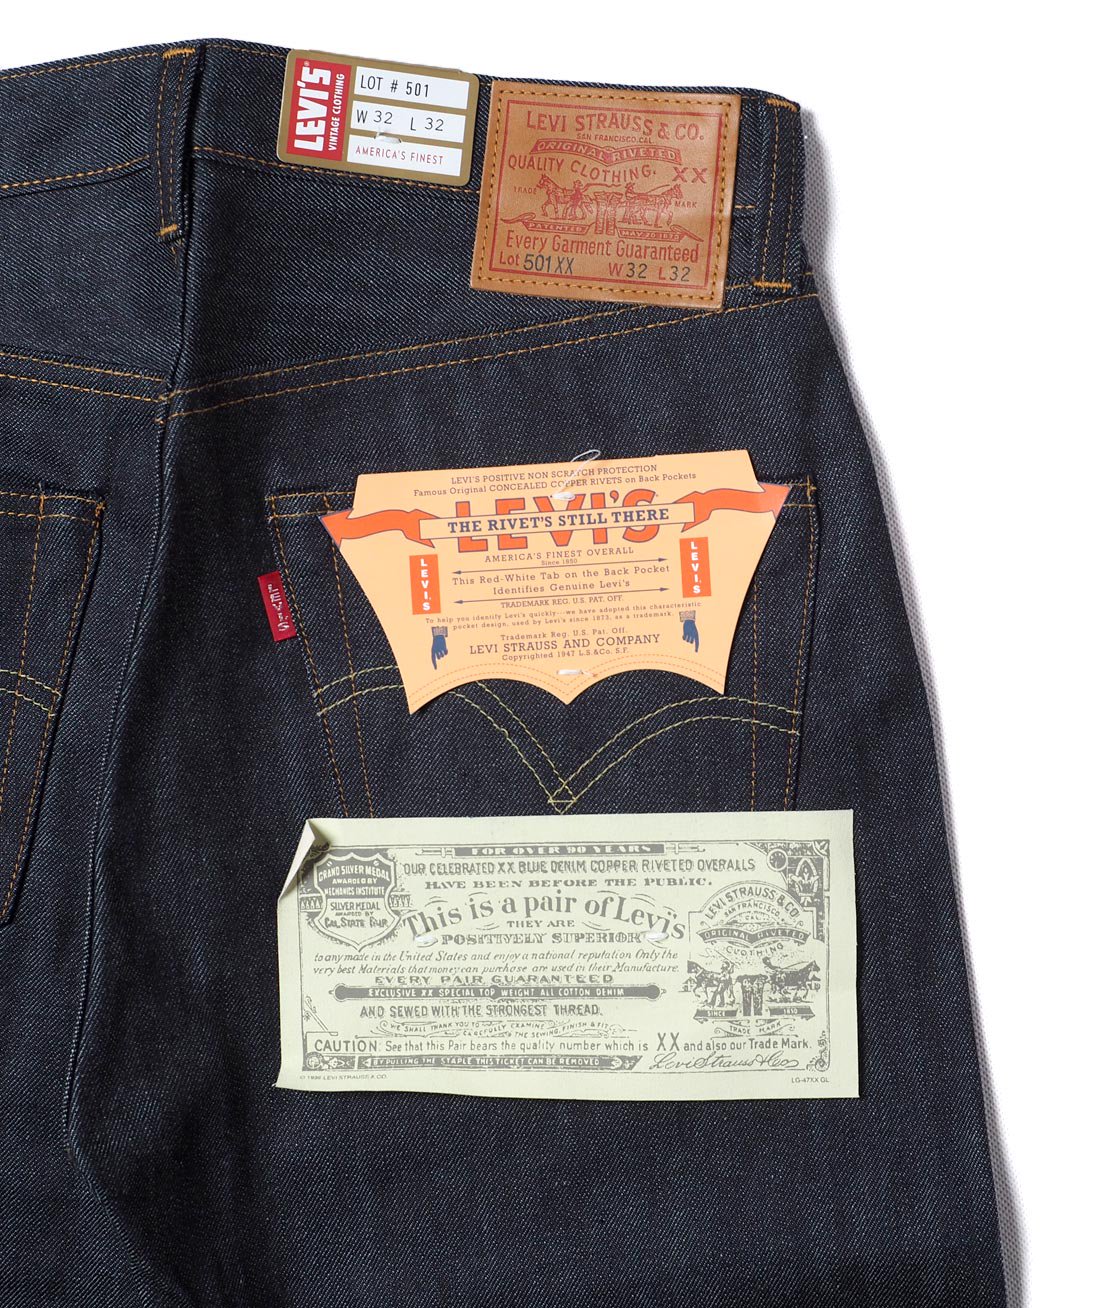 【LEVI'S VINTAGE CLOTHING】1947 501XX JEANS - RIGID リジッドジーンズ デニム リーバイス -  HUNKY DORY | LEVI'S VINTAGE CLOTHING、JACKMAN、CHAMPIONなどのブランドを主に扱うセレクトショップ 通販